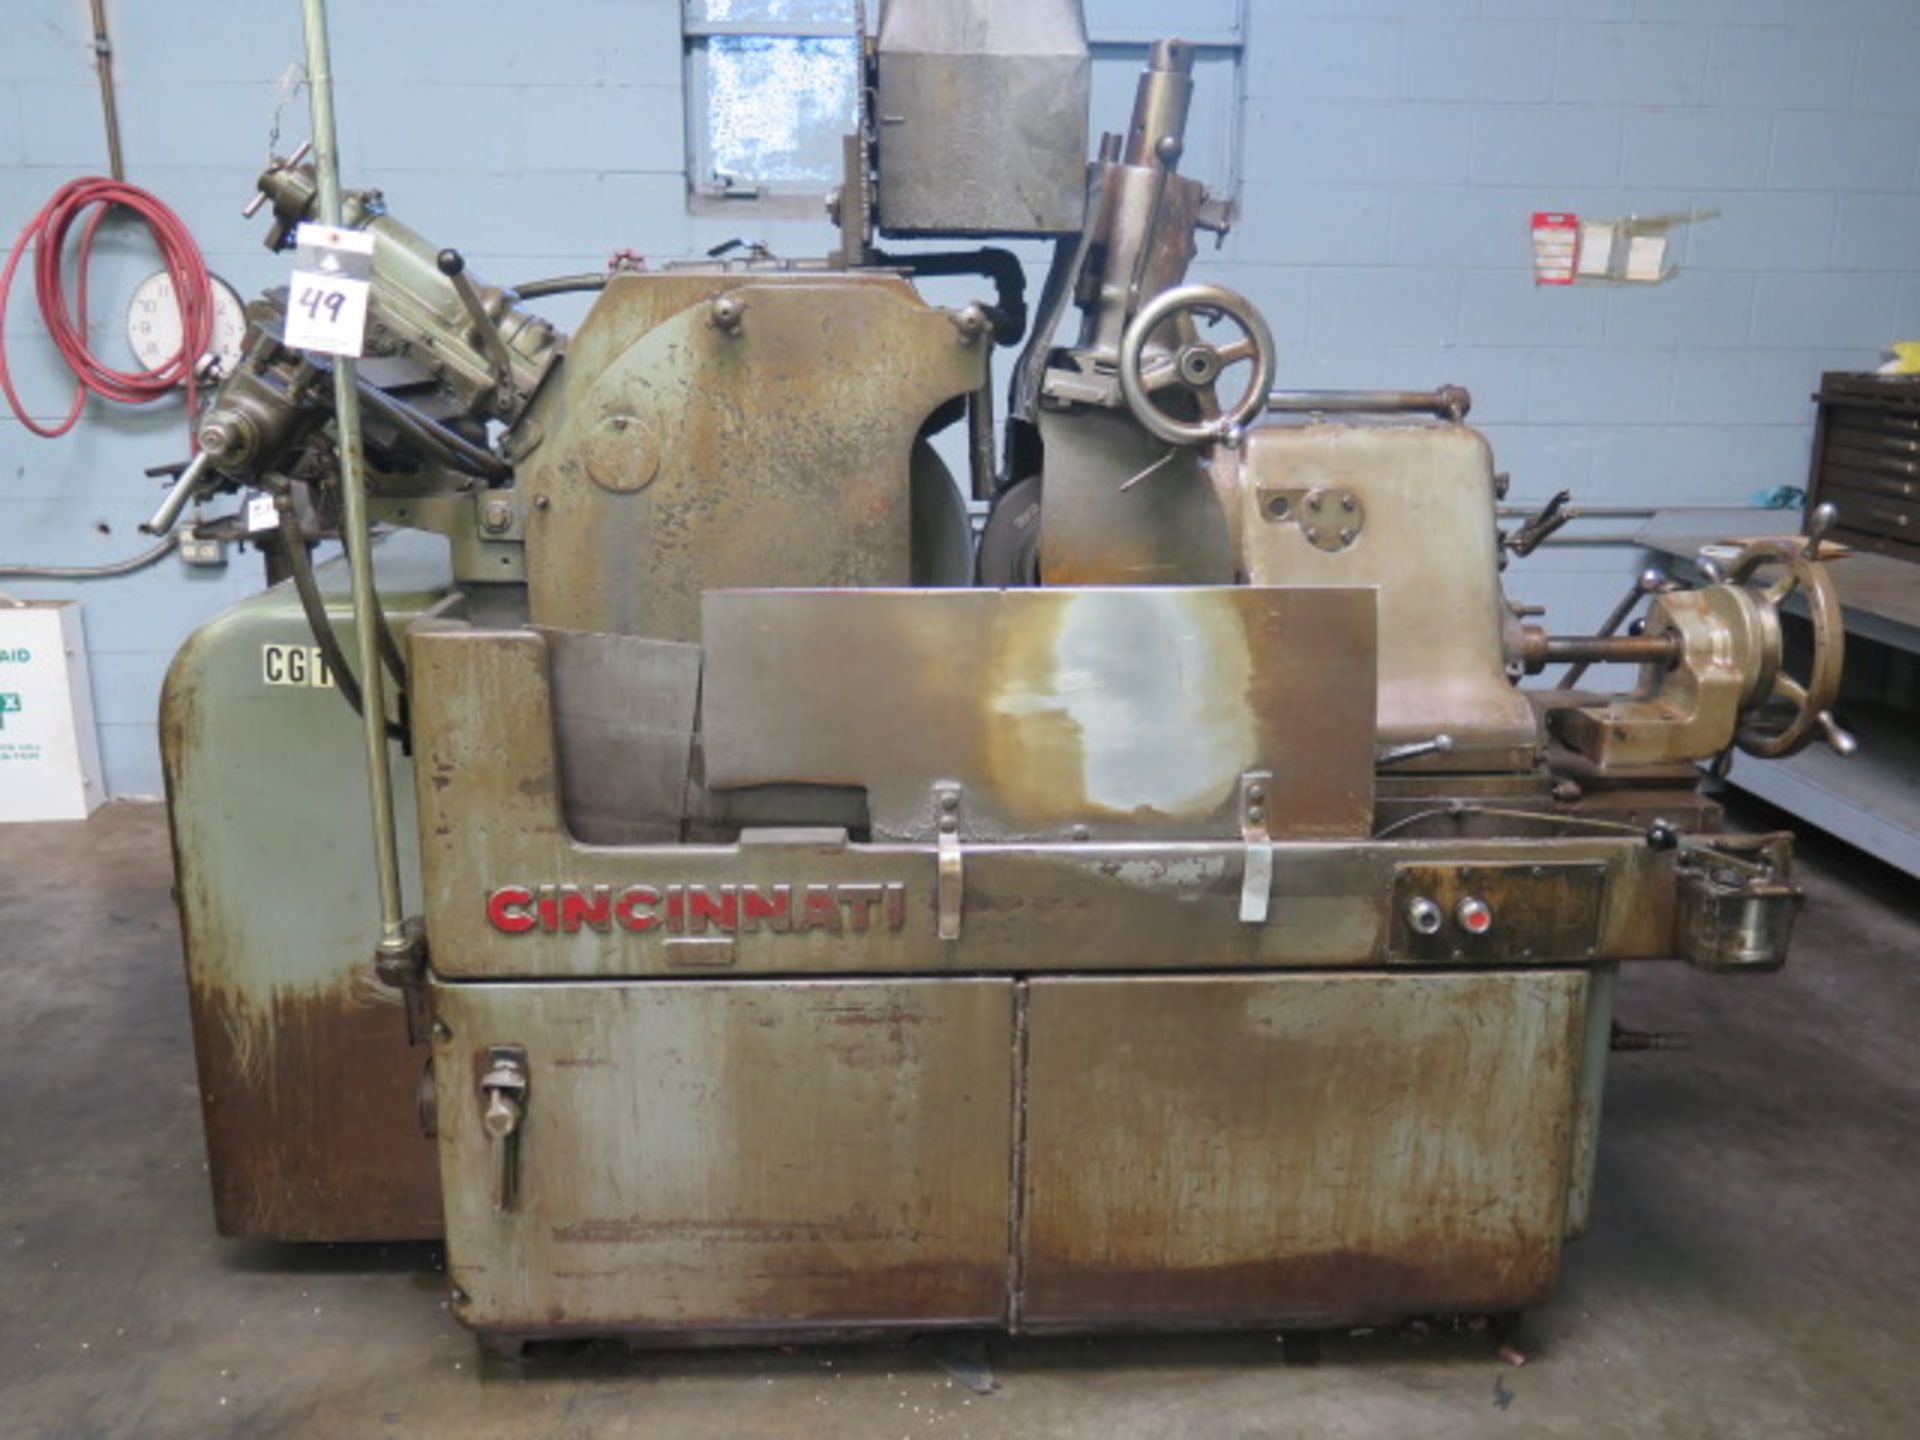 Cincinnati OM Centerless Grinder s/n 2M2H1V-18 w/ 24” Grinding Wheel, 12” Feed Wheel, Hydraulic